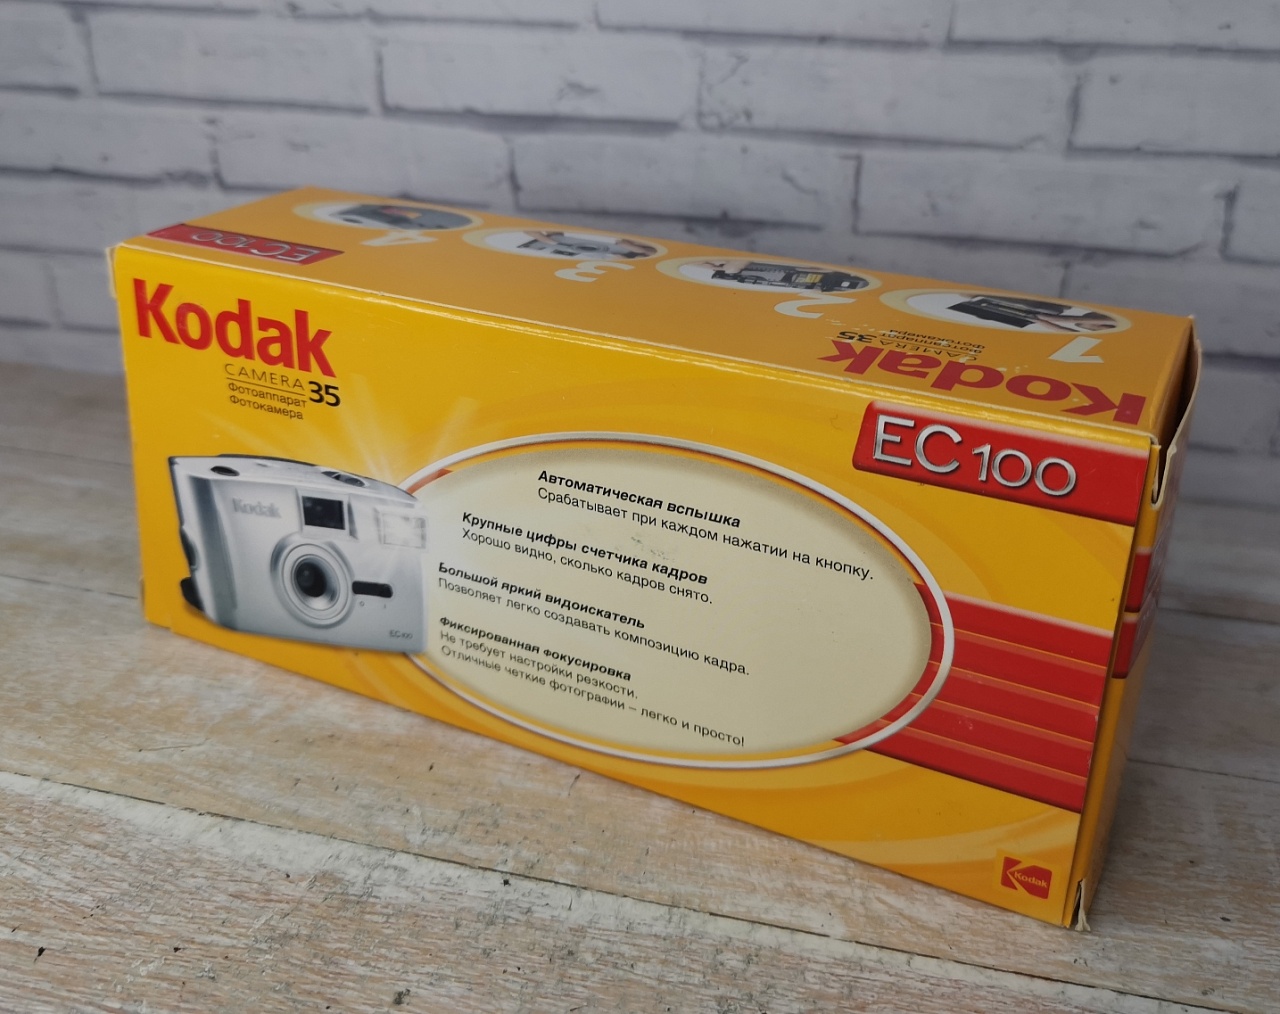 Оригинальный подарочный набор Kodak EC100 фото №2